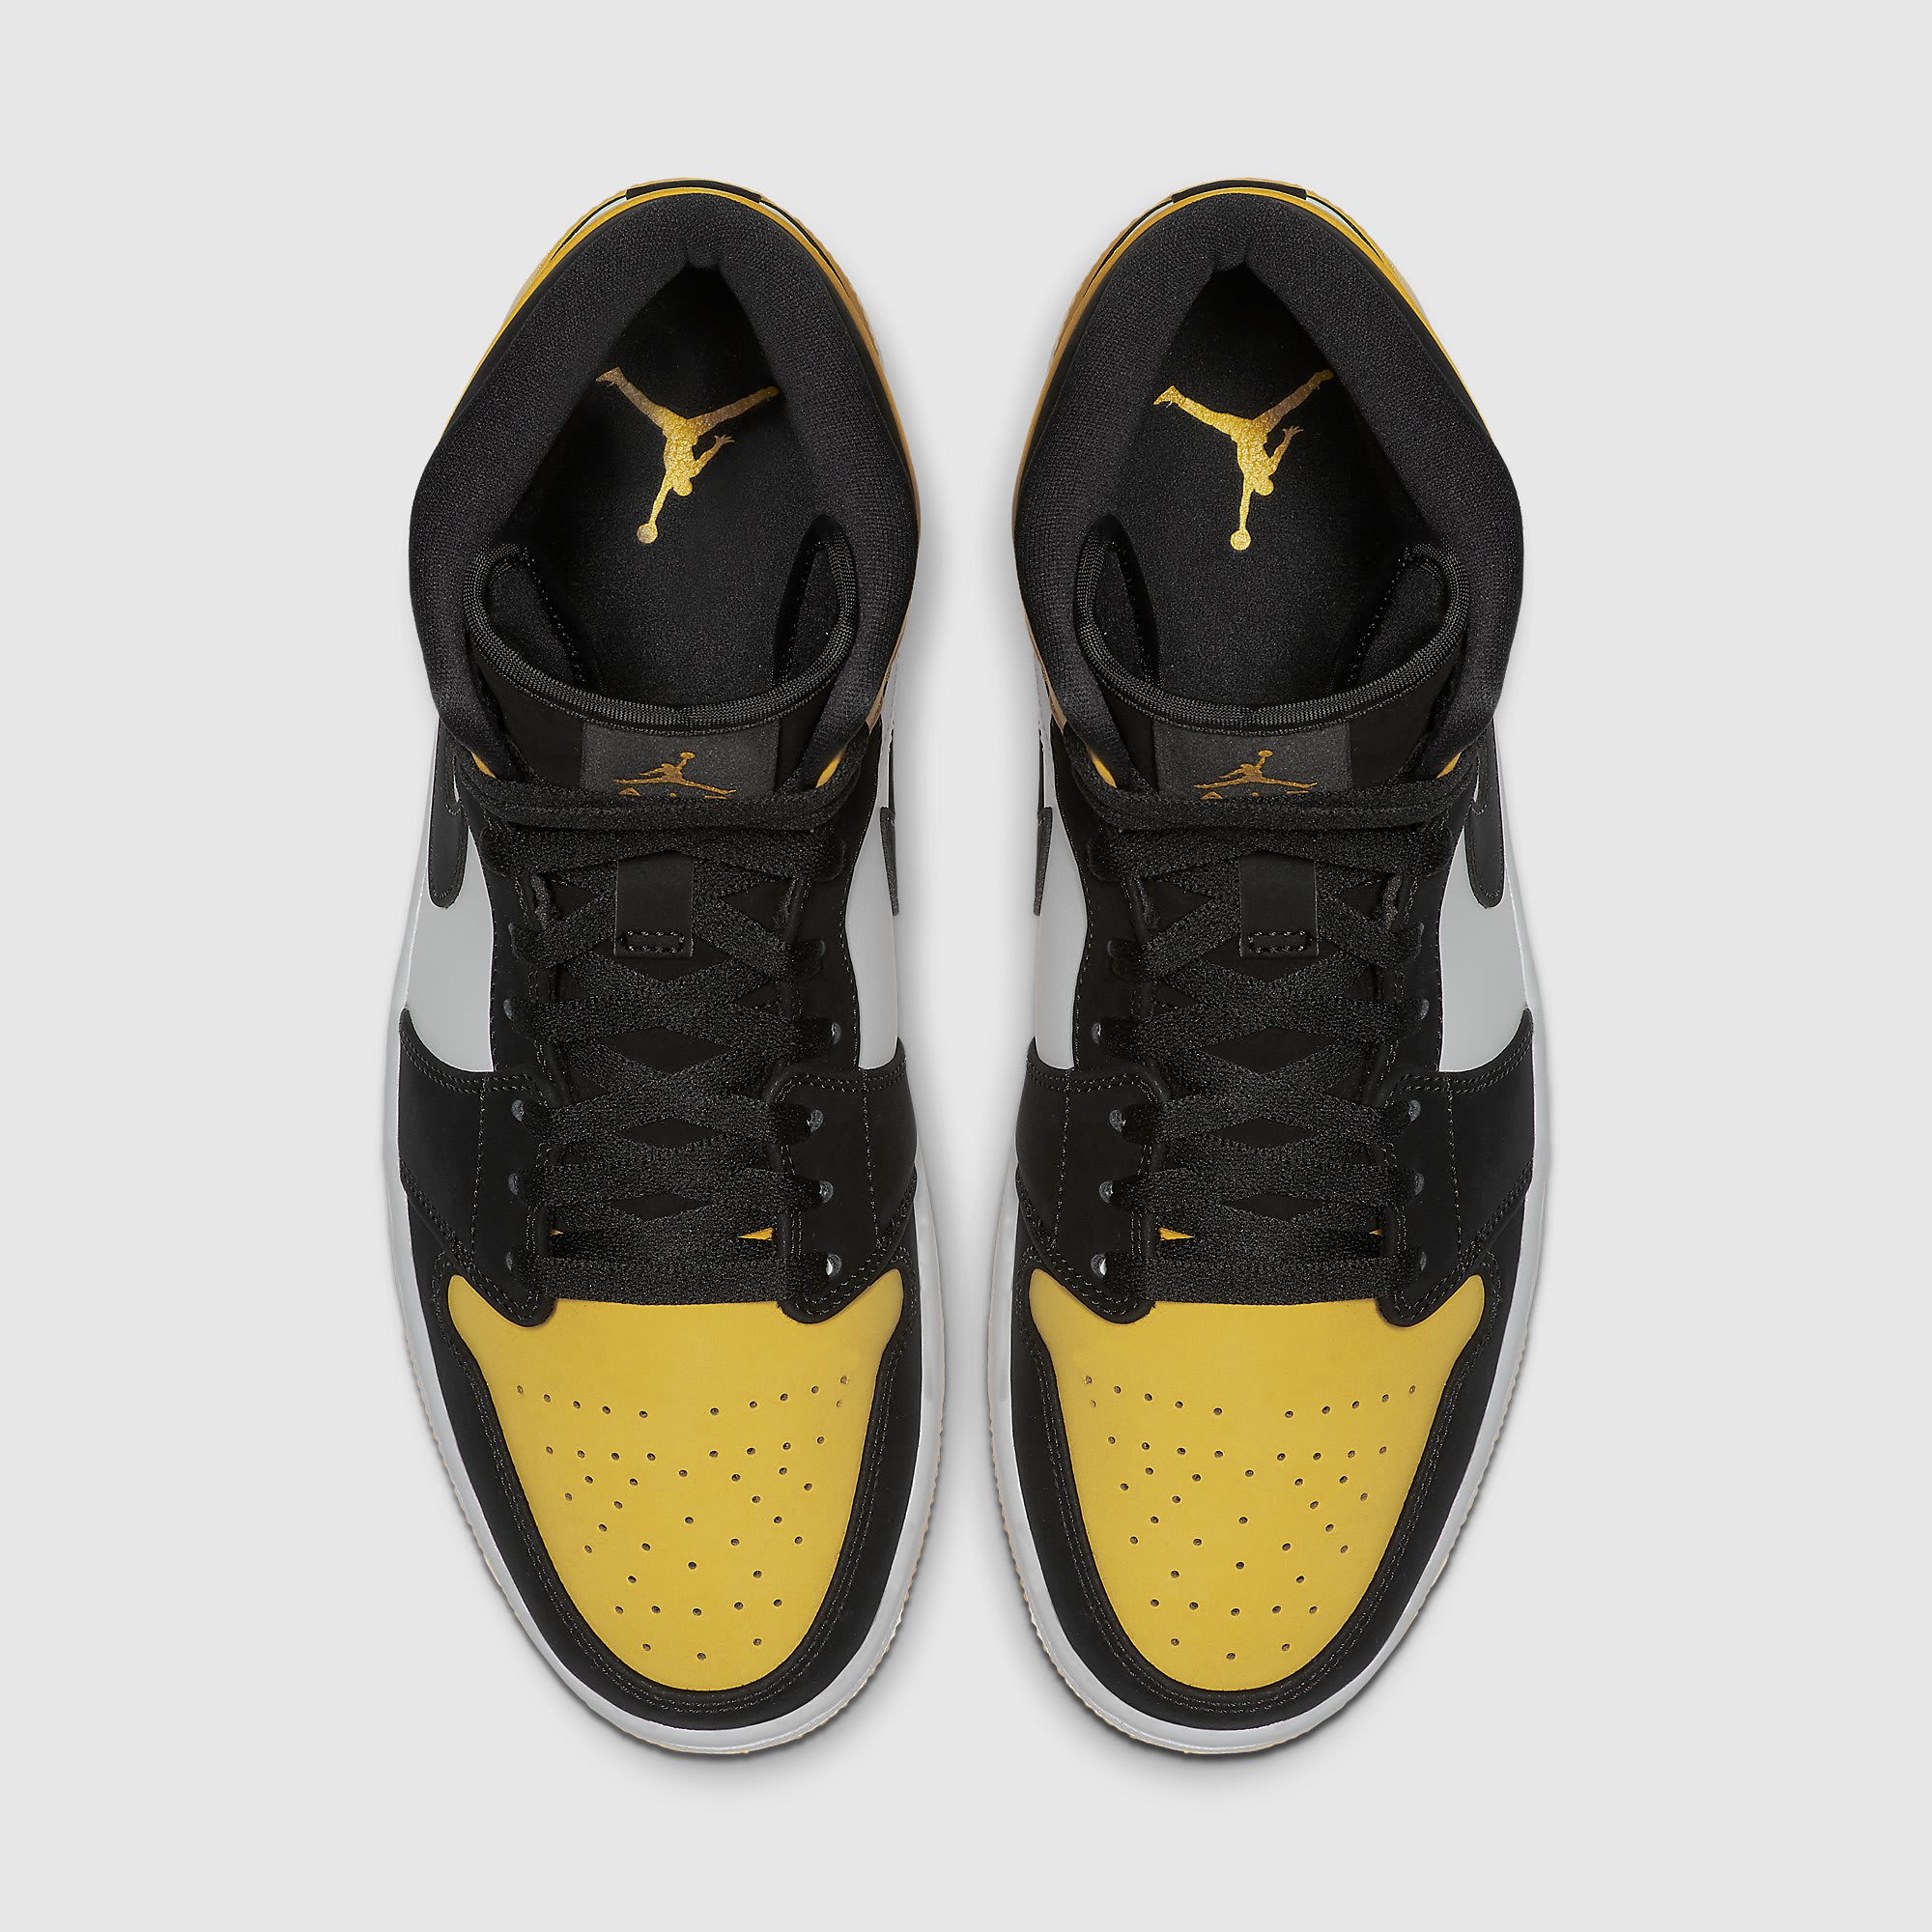 Air Jordan 1 Mid Yellow Toe Release Date 852542-071 Top